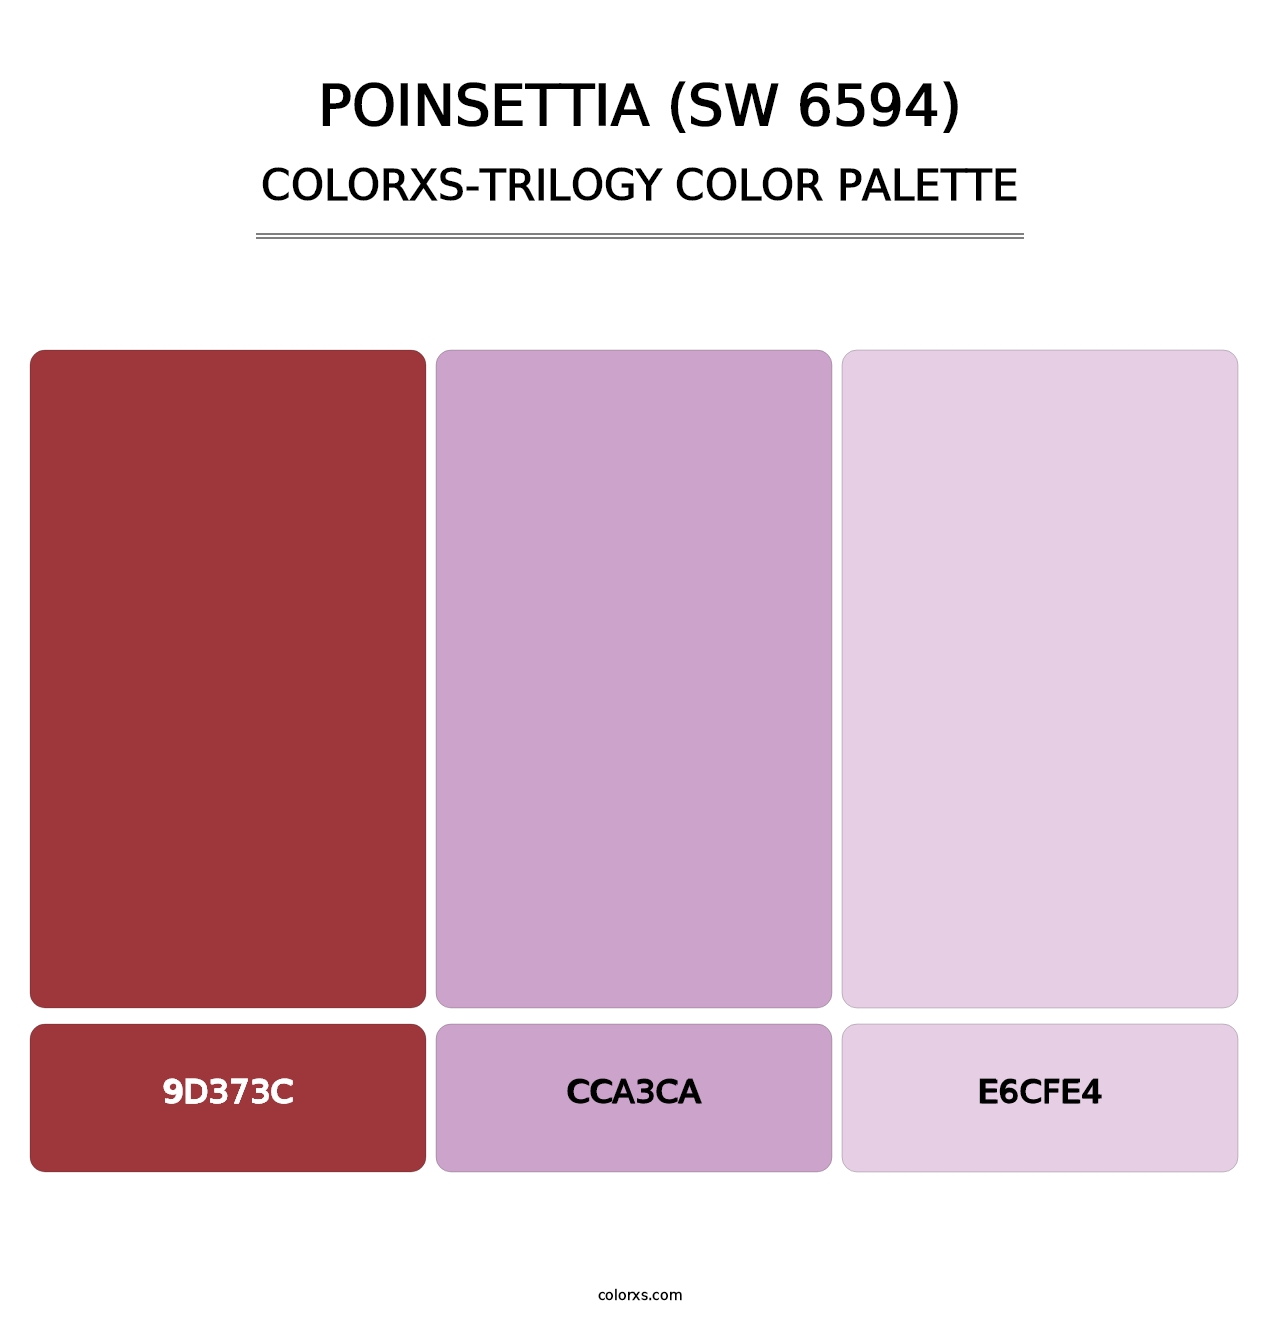 Poinsettia (SW 6594) - Colorxs Trilogy Palette